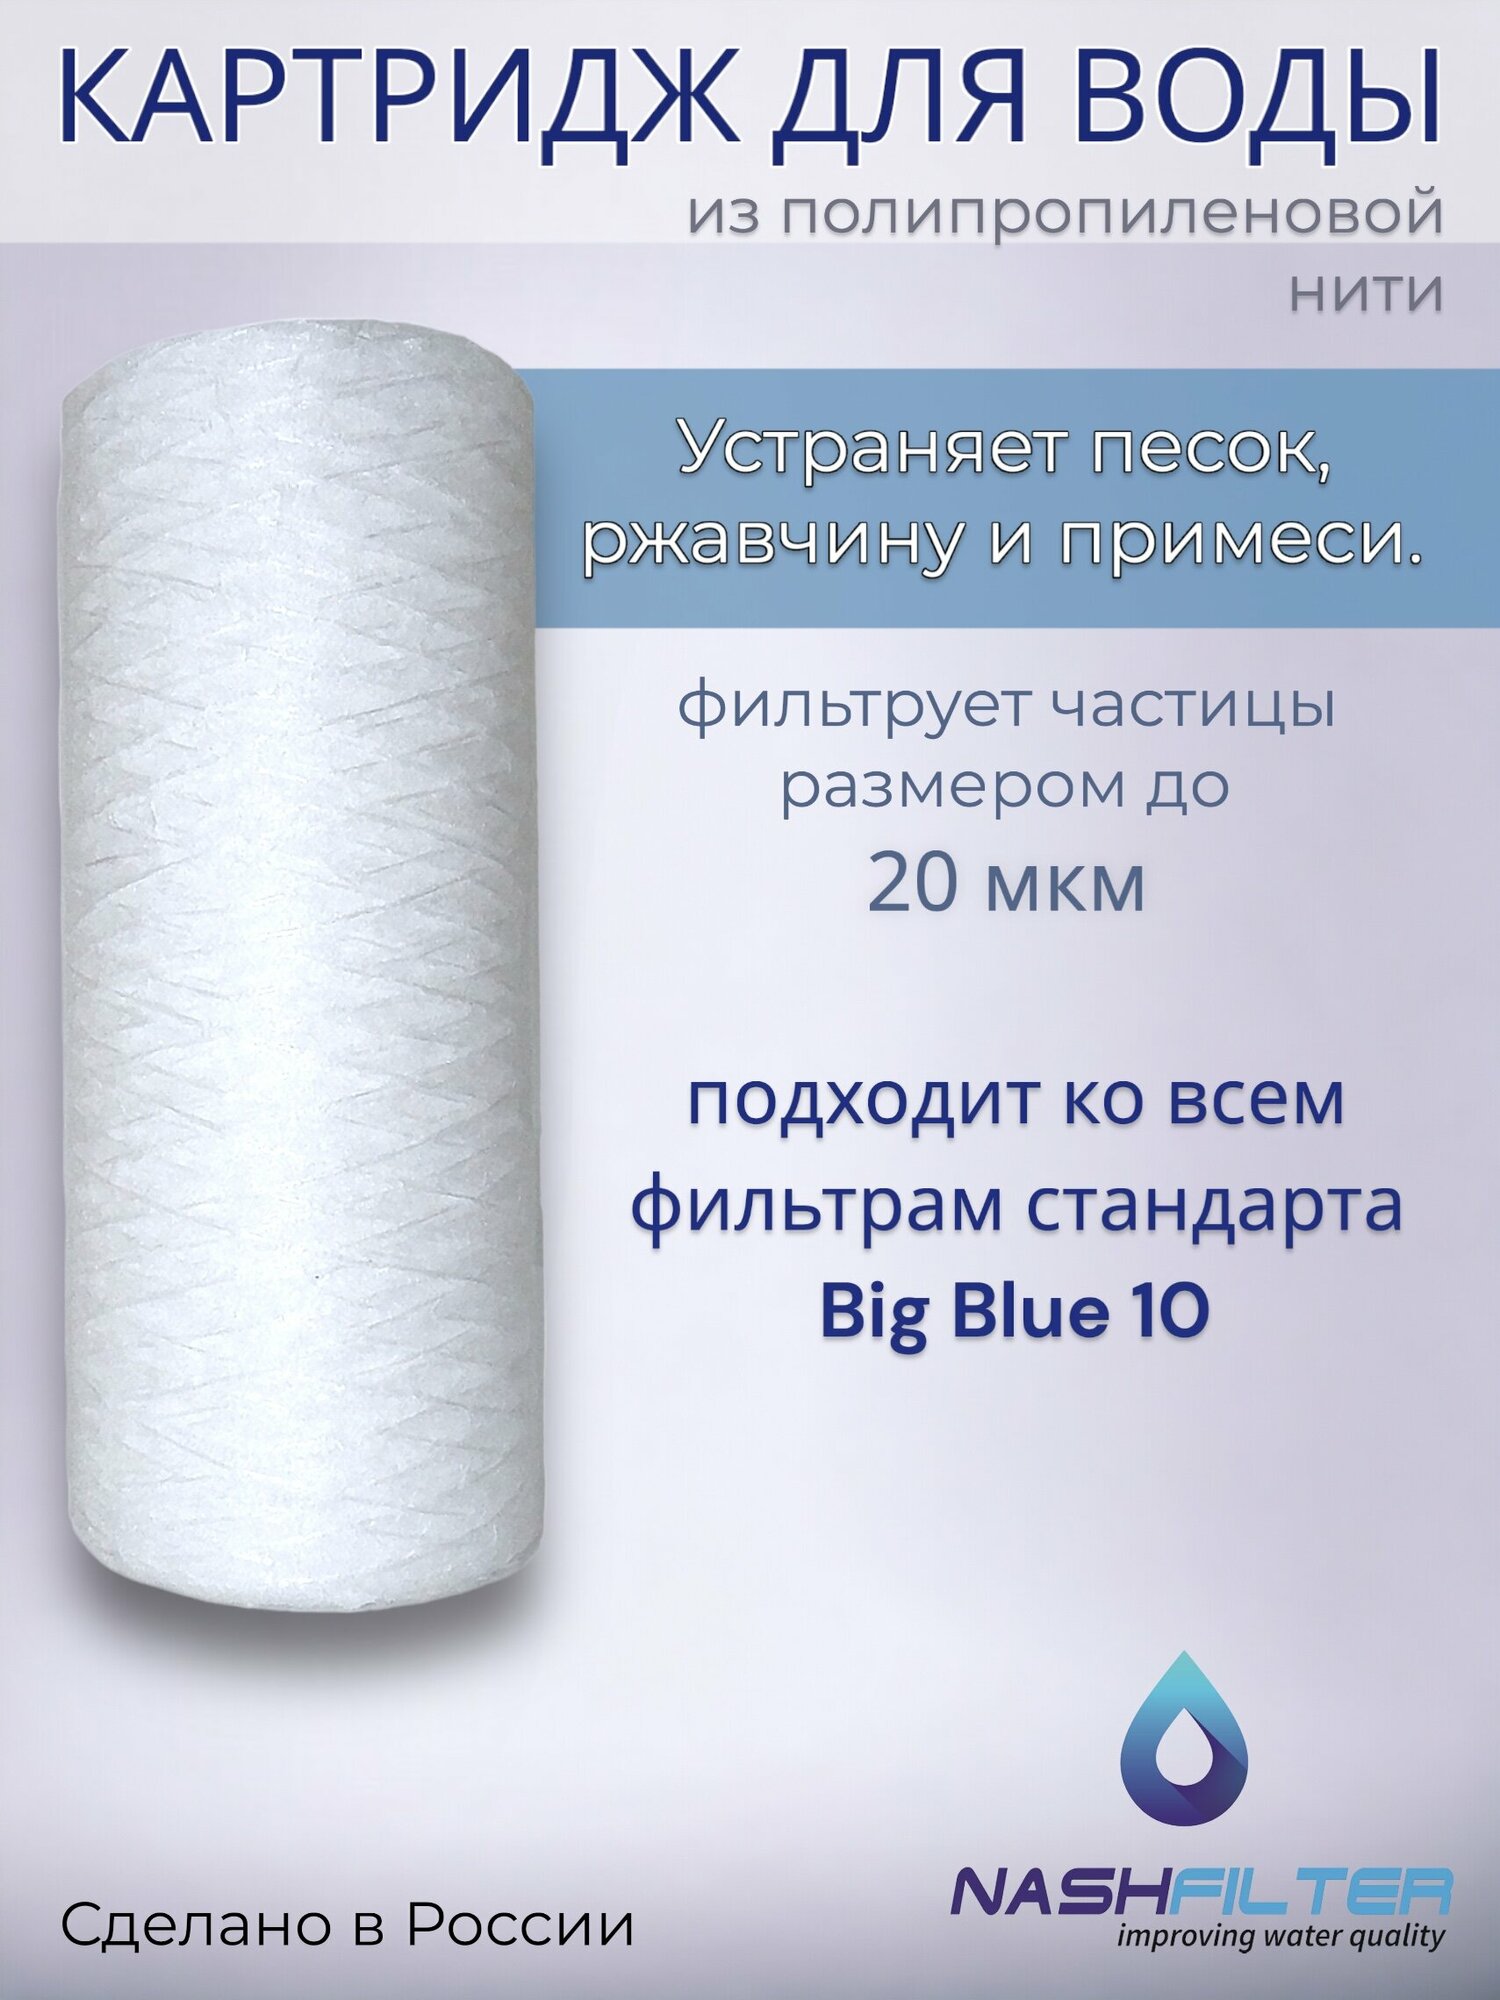 Картридж NASHFILTER для воды из полипропиленовой нити РS 10 Big Blue